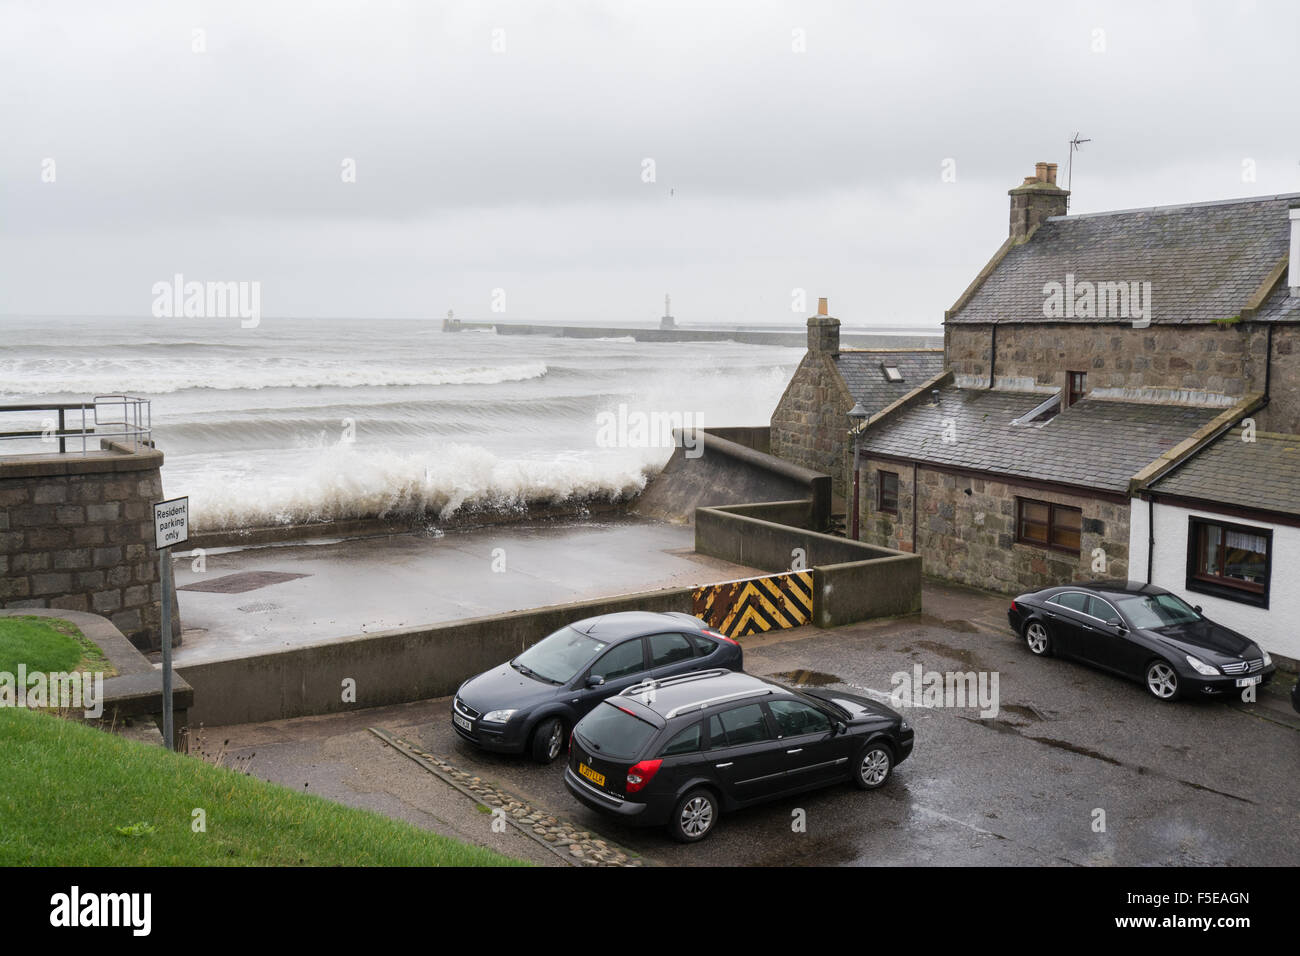 Onde che si schiantano contro le difese del mare nella parte anteriore del granito vecchie case di pescatori e automobili, Footdee, Aberdeen Scotland, Regno Unito Foto Stock